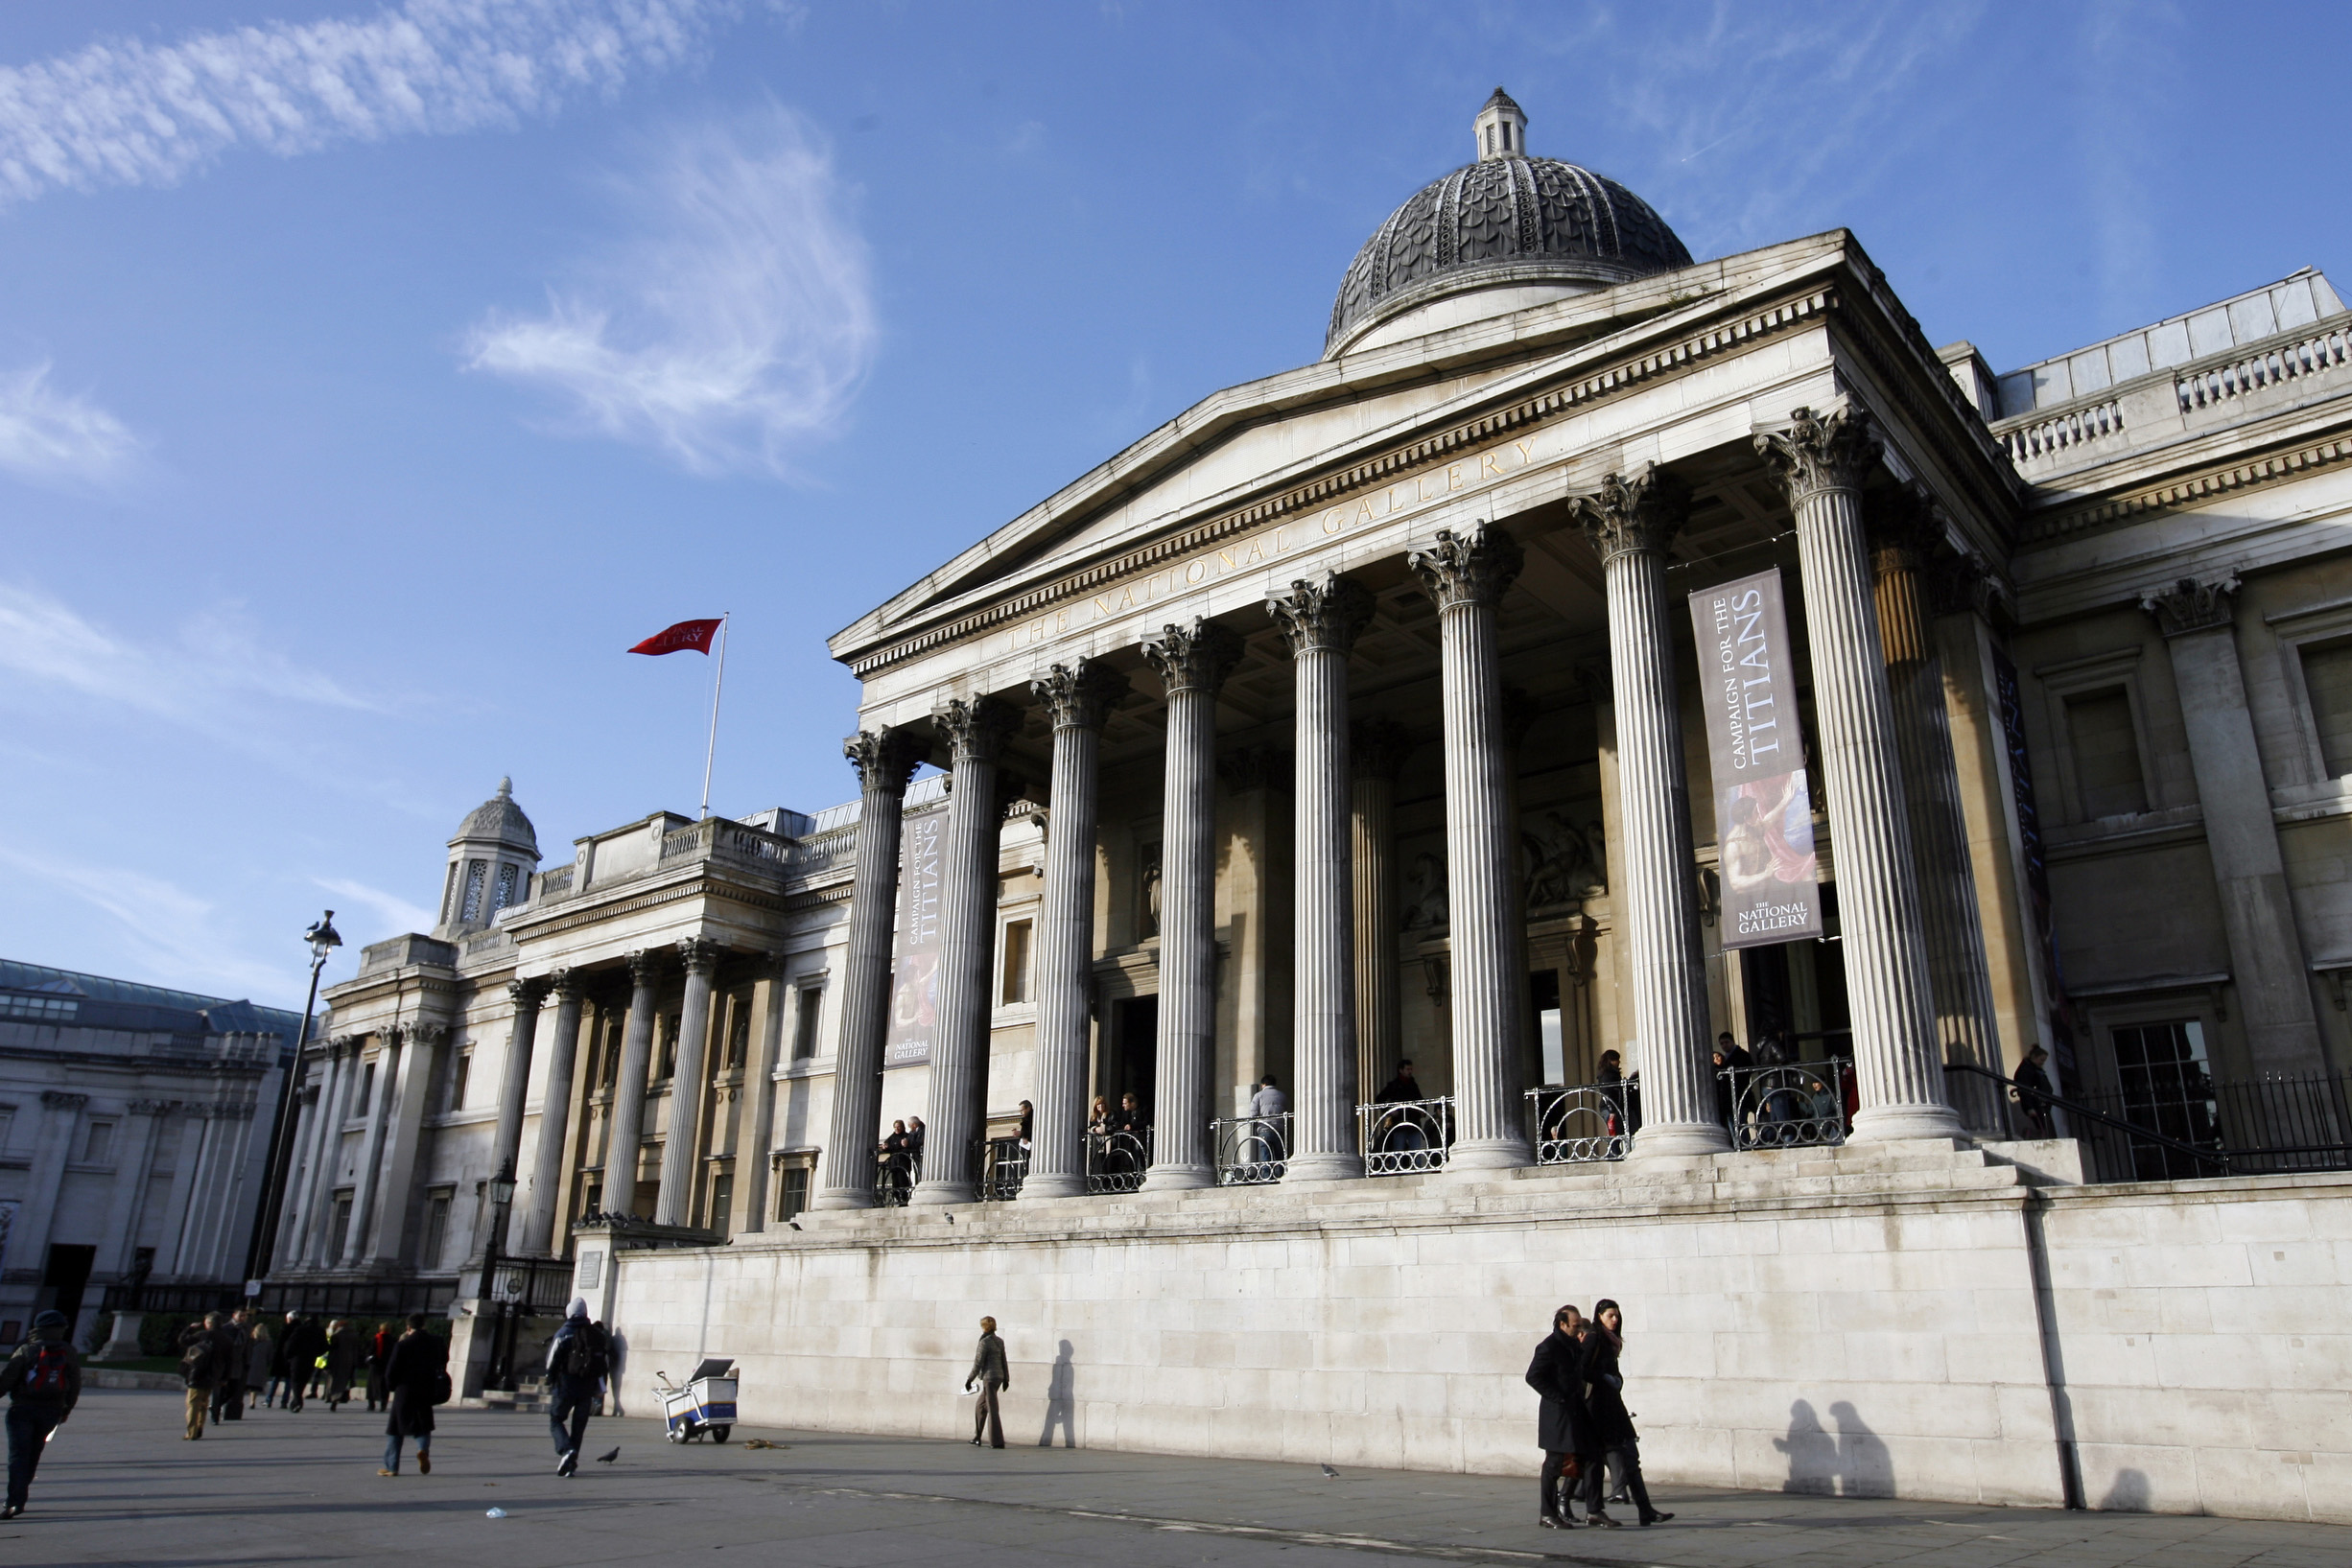 Vid Trafalgar Square ligger konstmuseet National Gallery. En dröm för den konstintresserade. Här finns över 2000 målningar att beskåda.